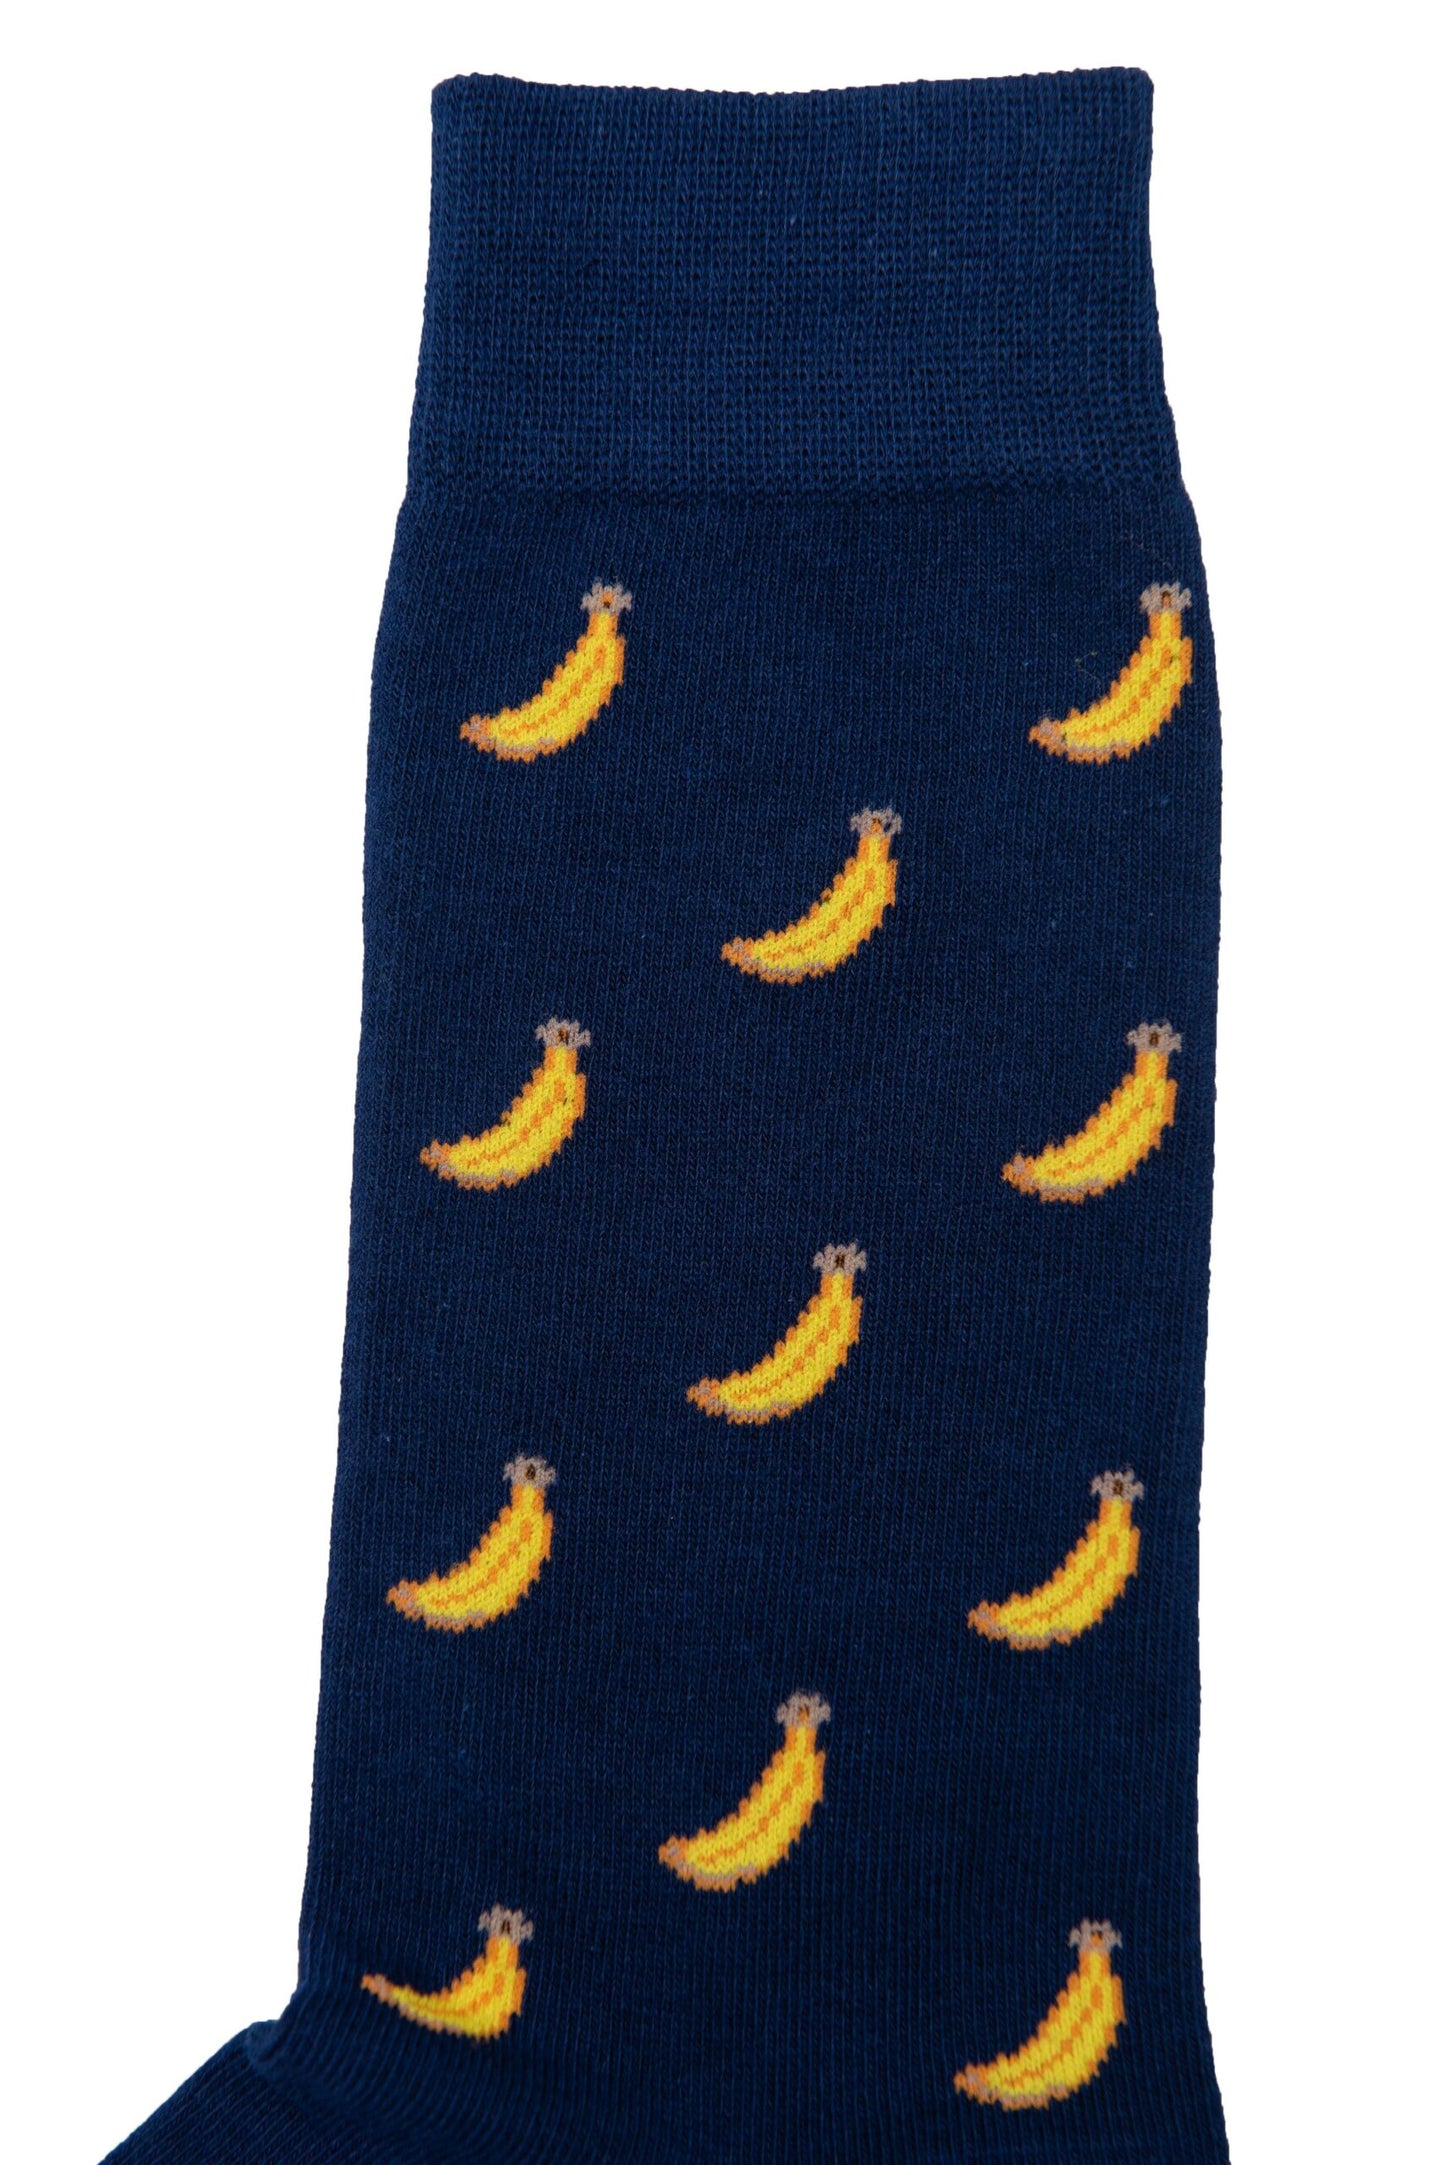 A pair of Banana Socks adorned with vibrant bananas.